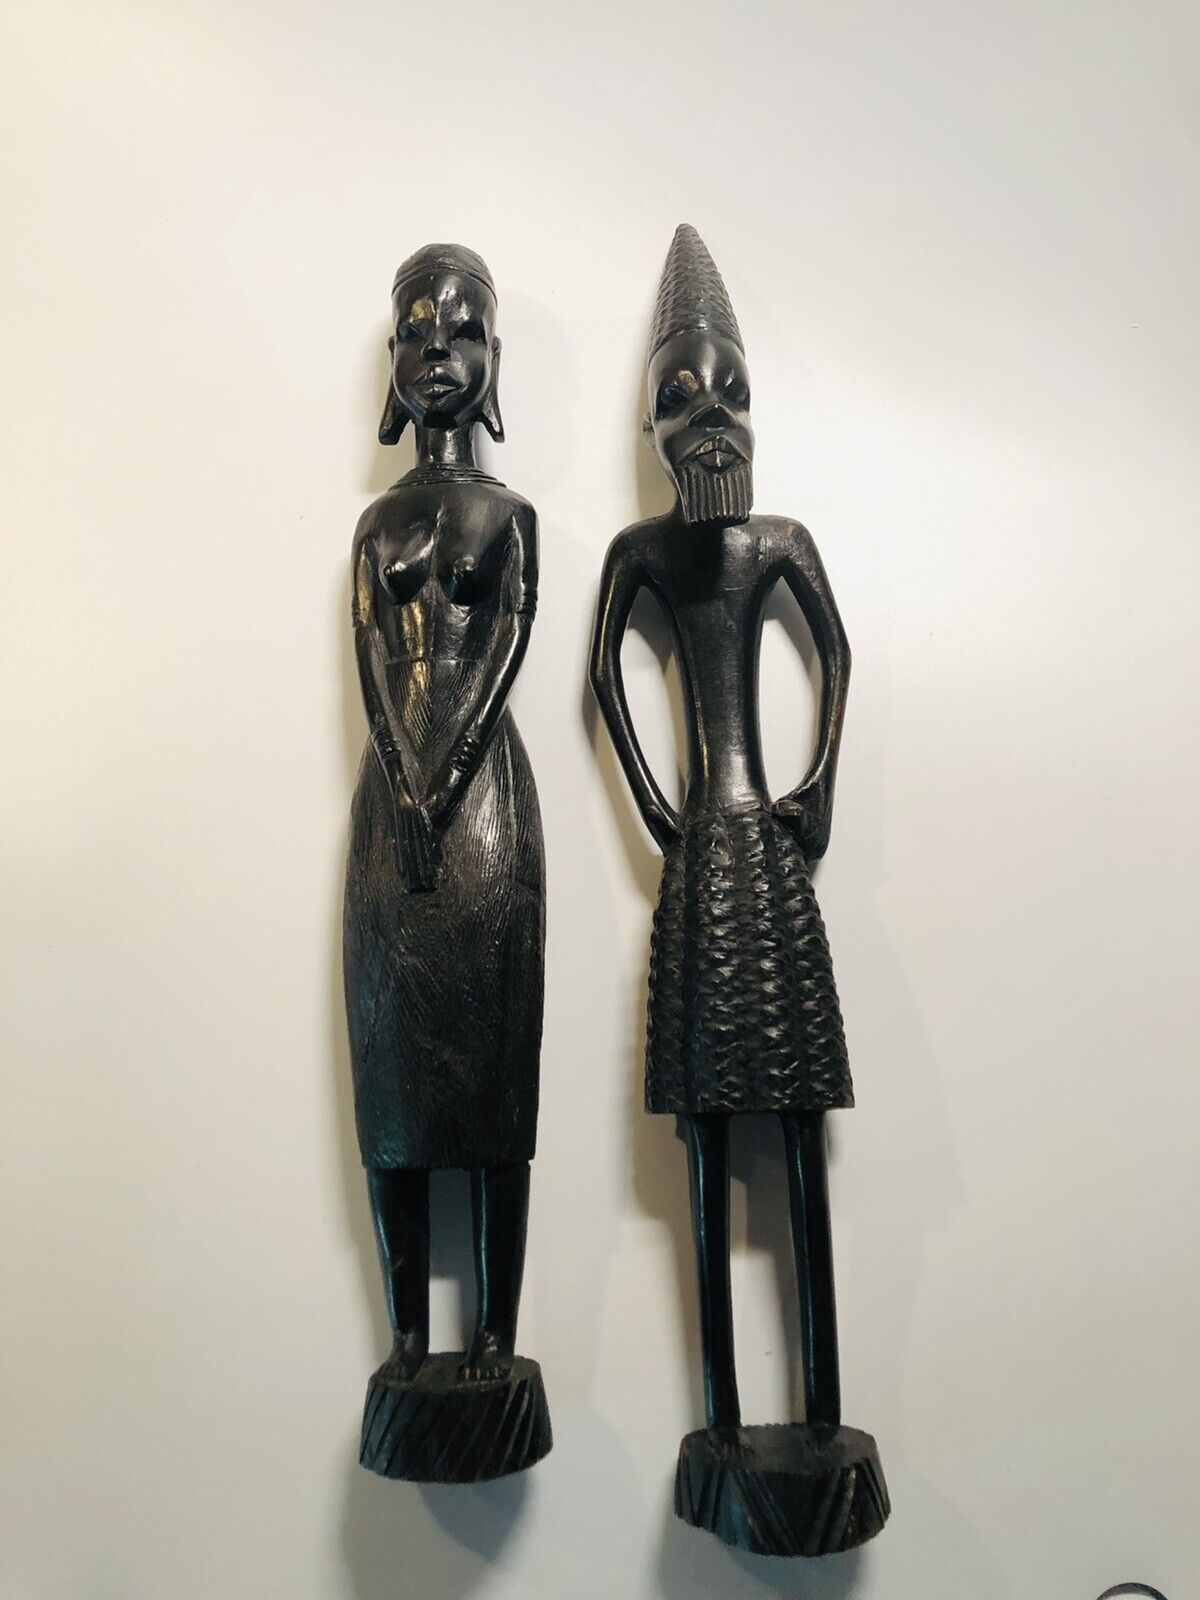 Pair Vintage African Handcarved Wood Figurines Man & Woman, African Art